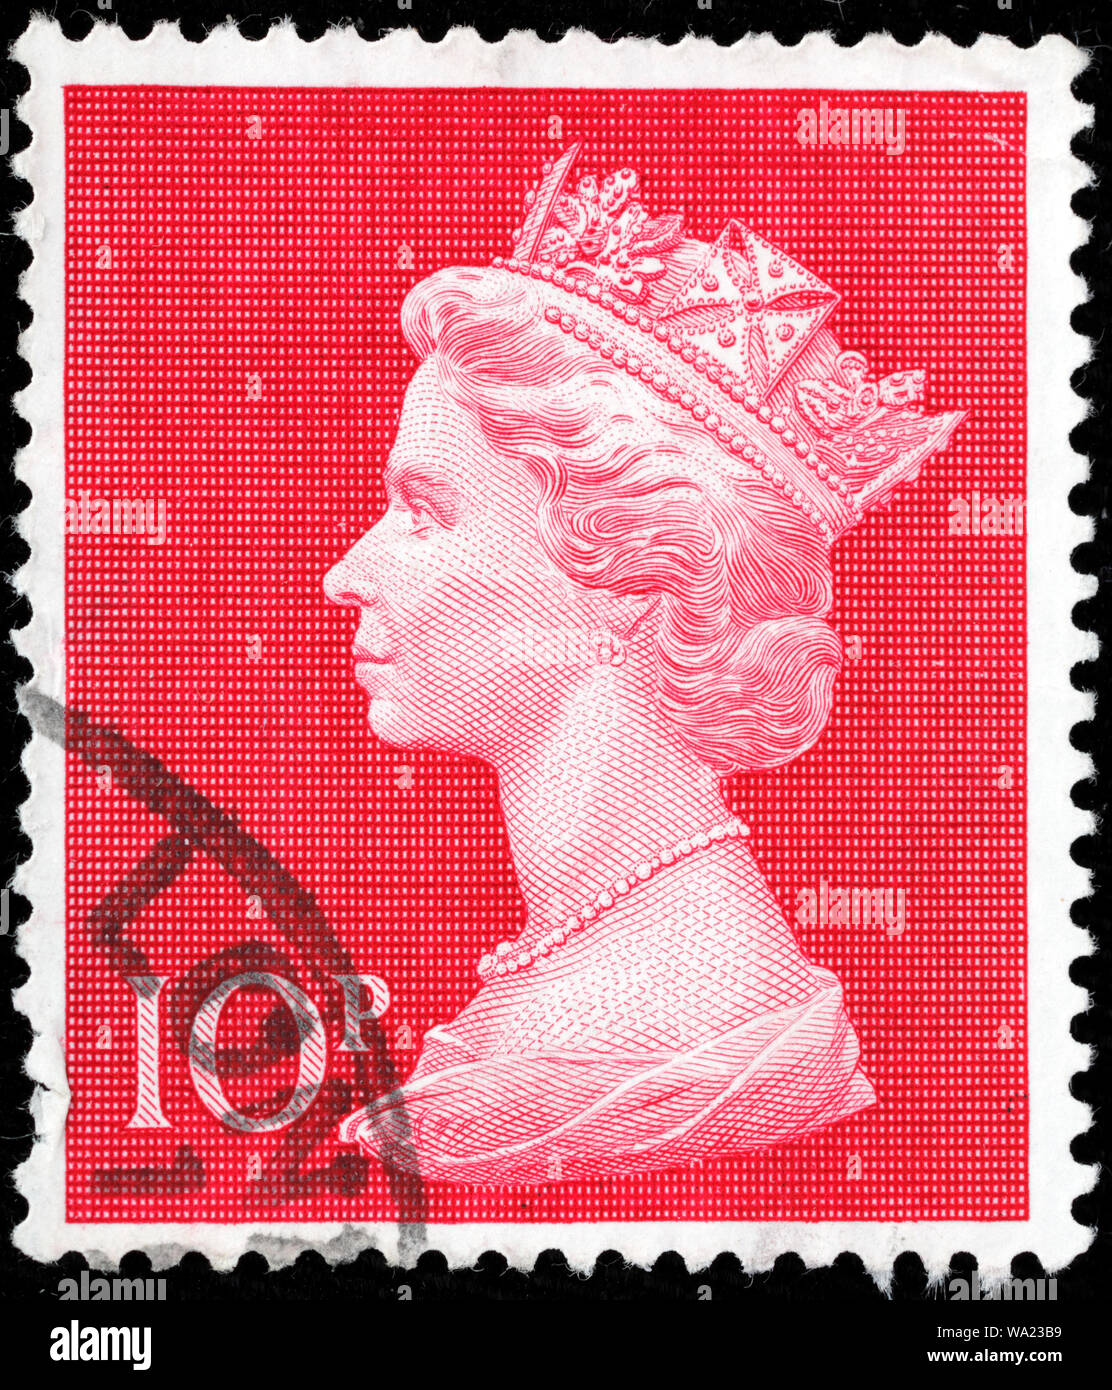 Queen Elizabeth II, Machin series, postage stamp, UK, 1970 Stock Photo